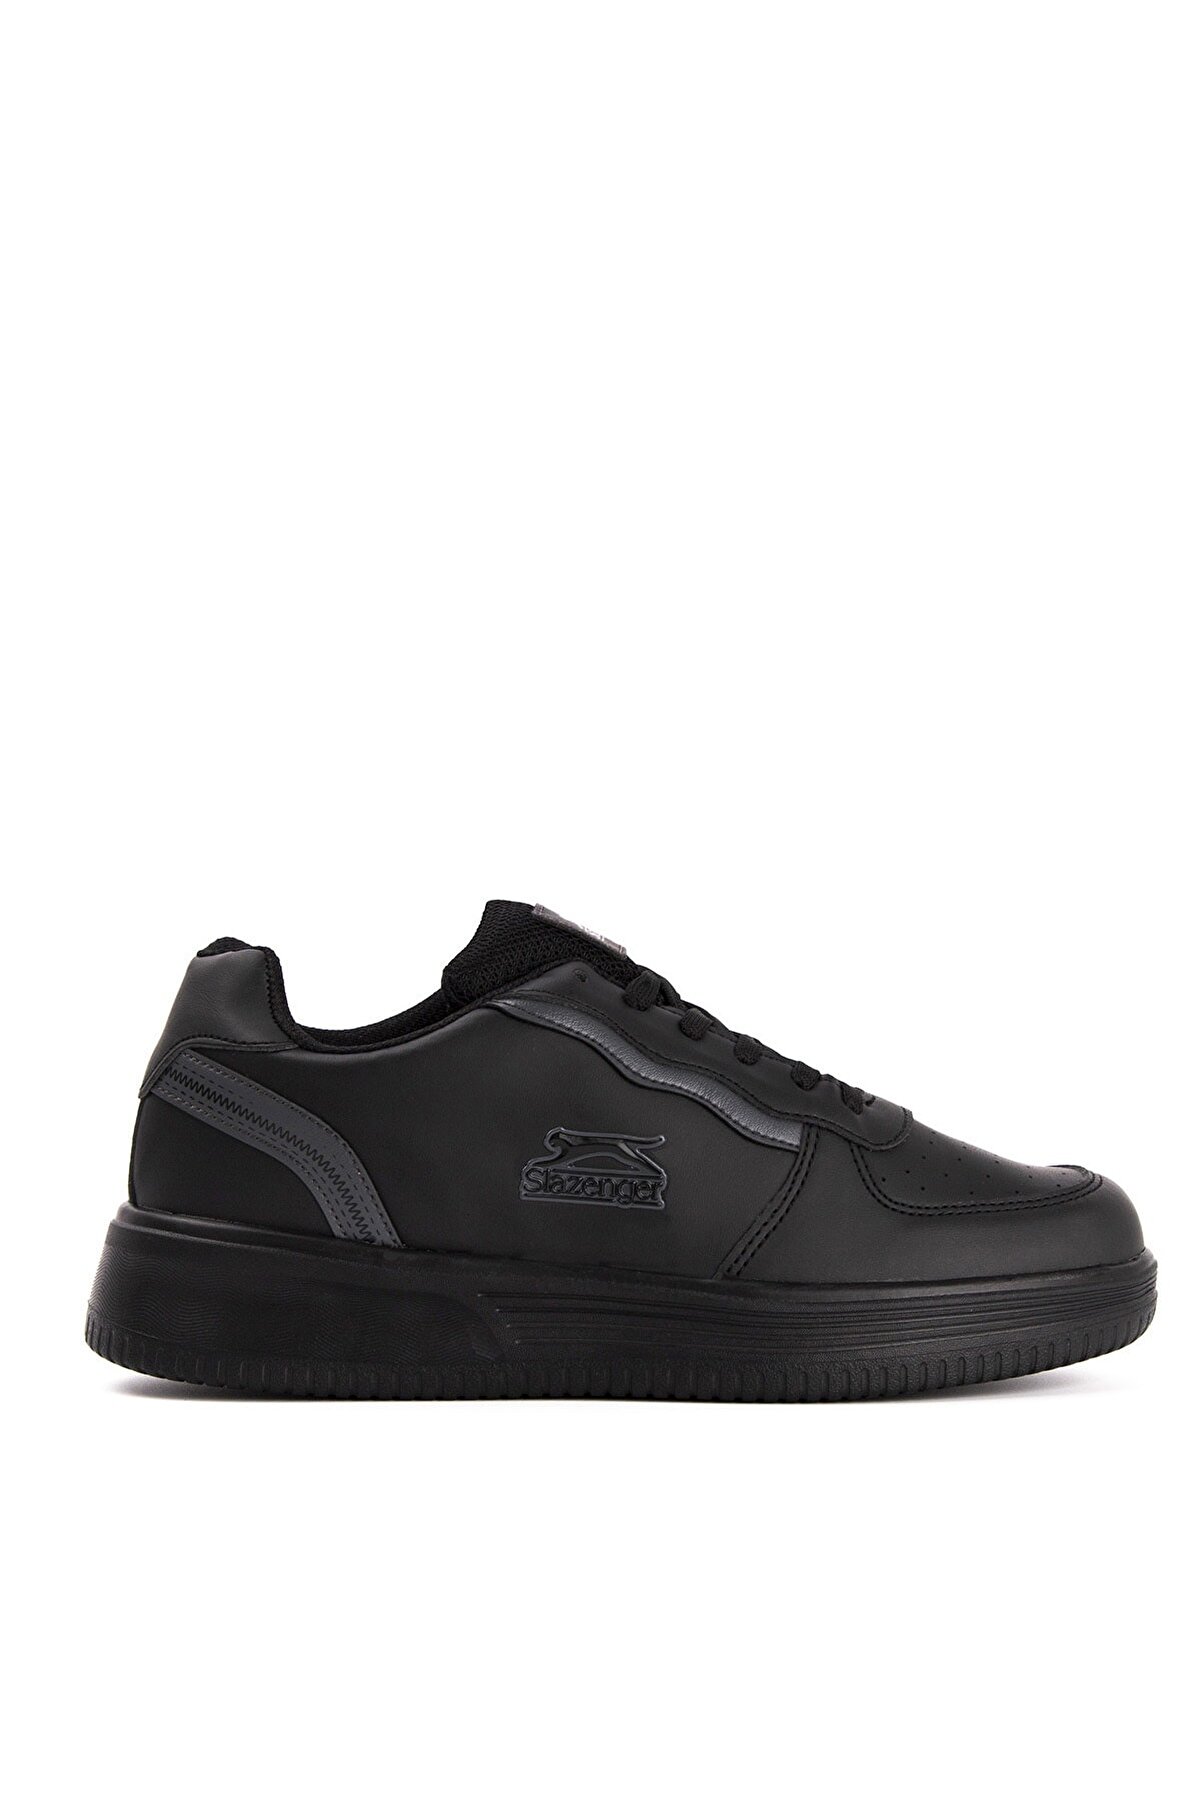 Slazenger Impact Sneaker Kadın Ayakkabı Siyah Sa20lk032